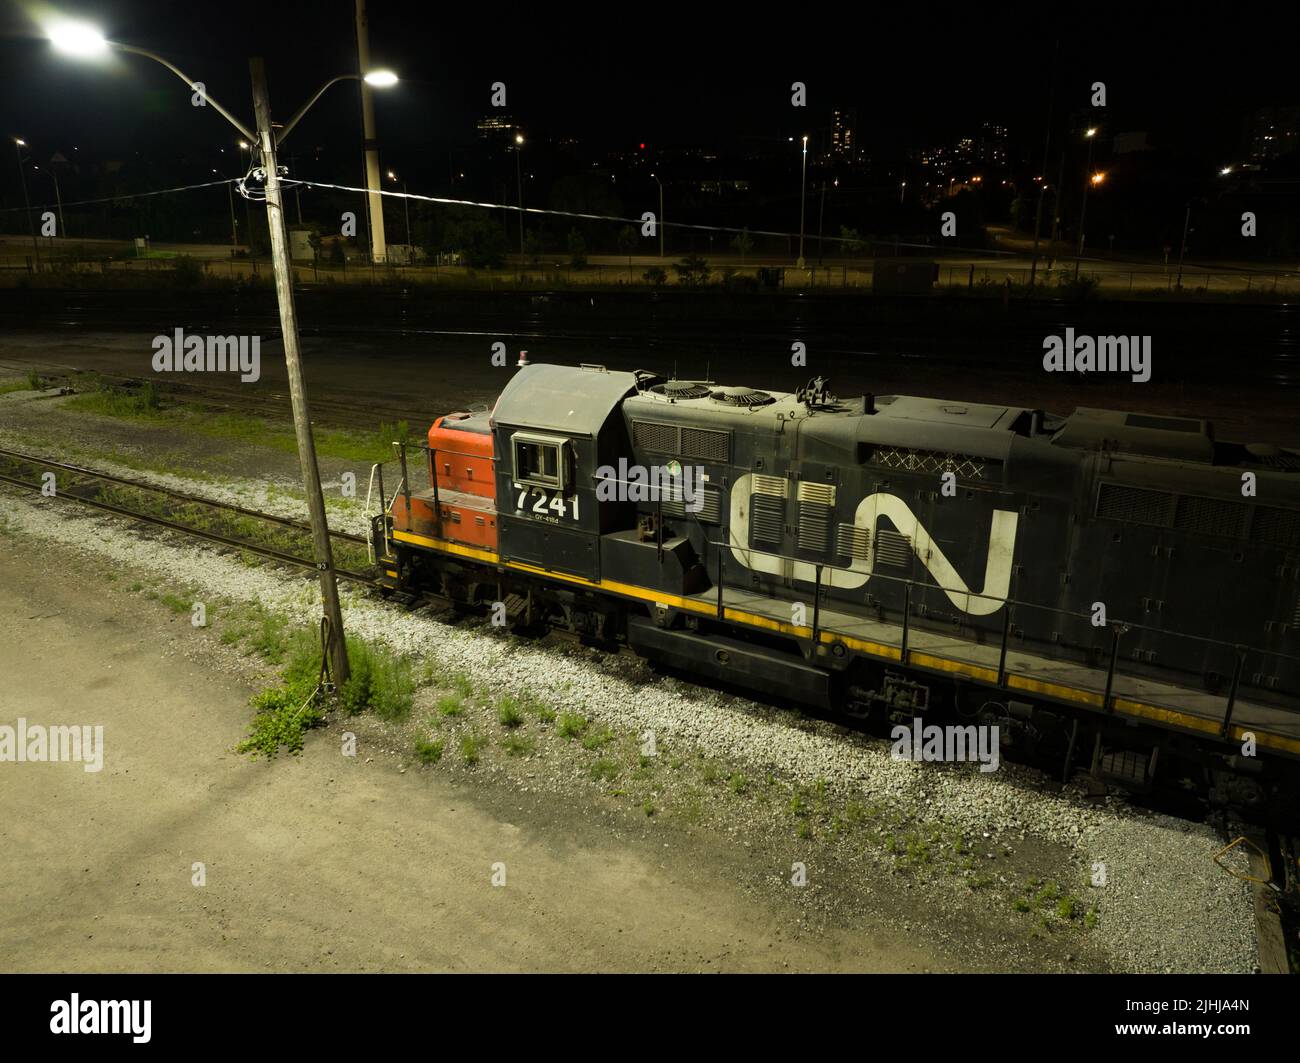 Una locomotiva fissa CN Rail (Canadian National Railway) è visibile di notte con il suo logo illuminato sul lato del treno. Foto Stock